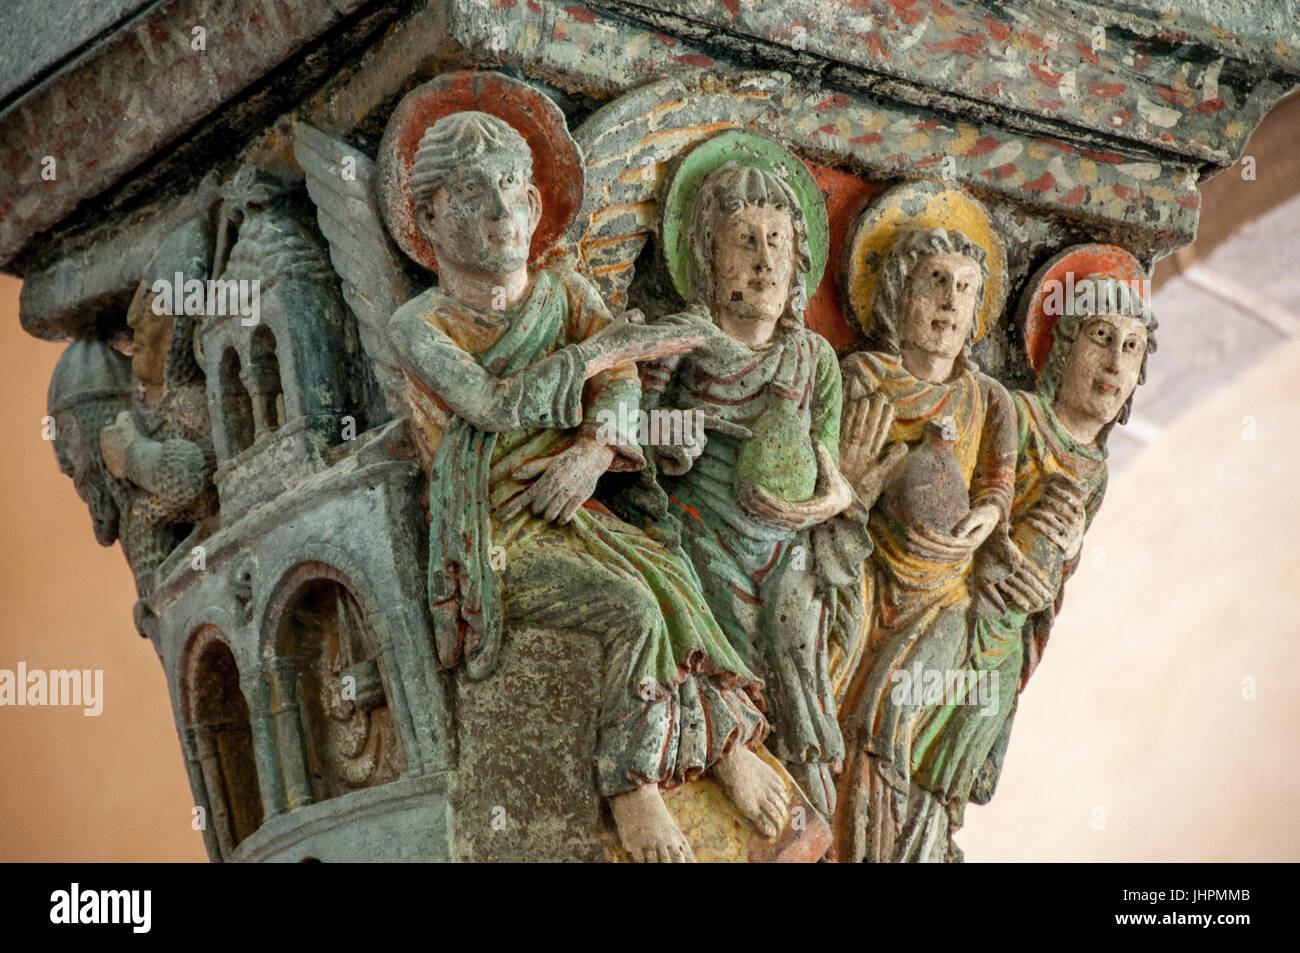 Sculpture sur les colonnes, de l'intérieur de l'église romane de Saint Nectaire, Puy de Dome, Auvergne, France Banque D'Images